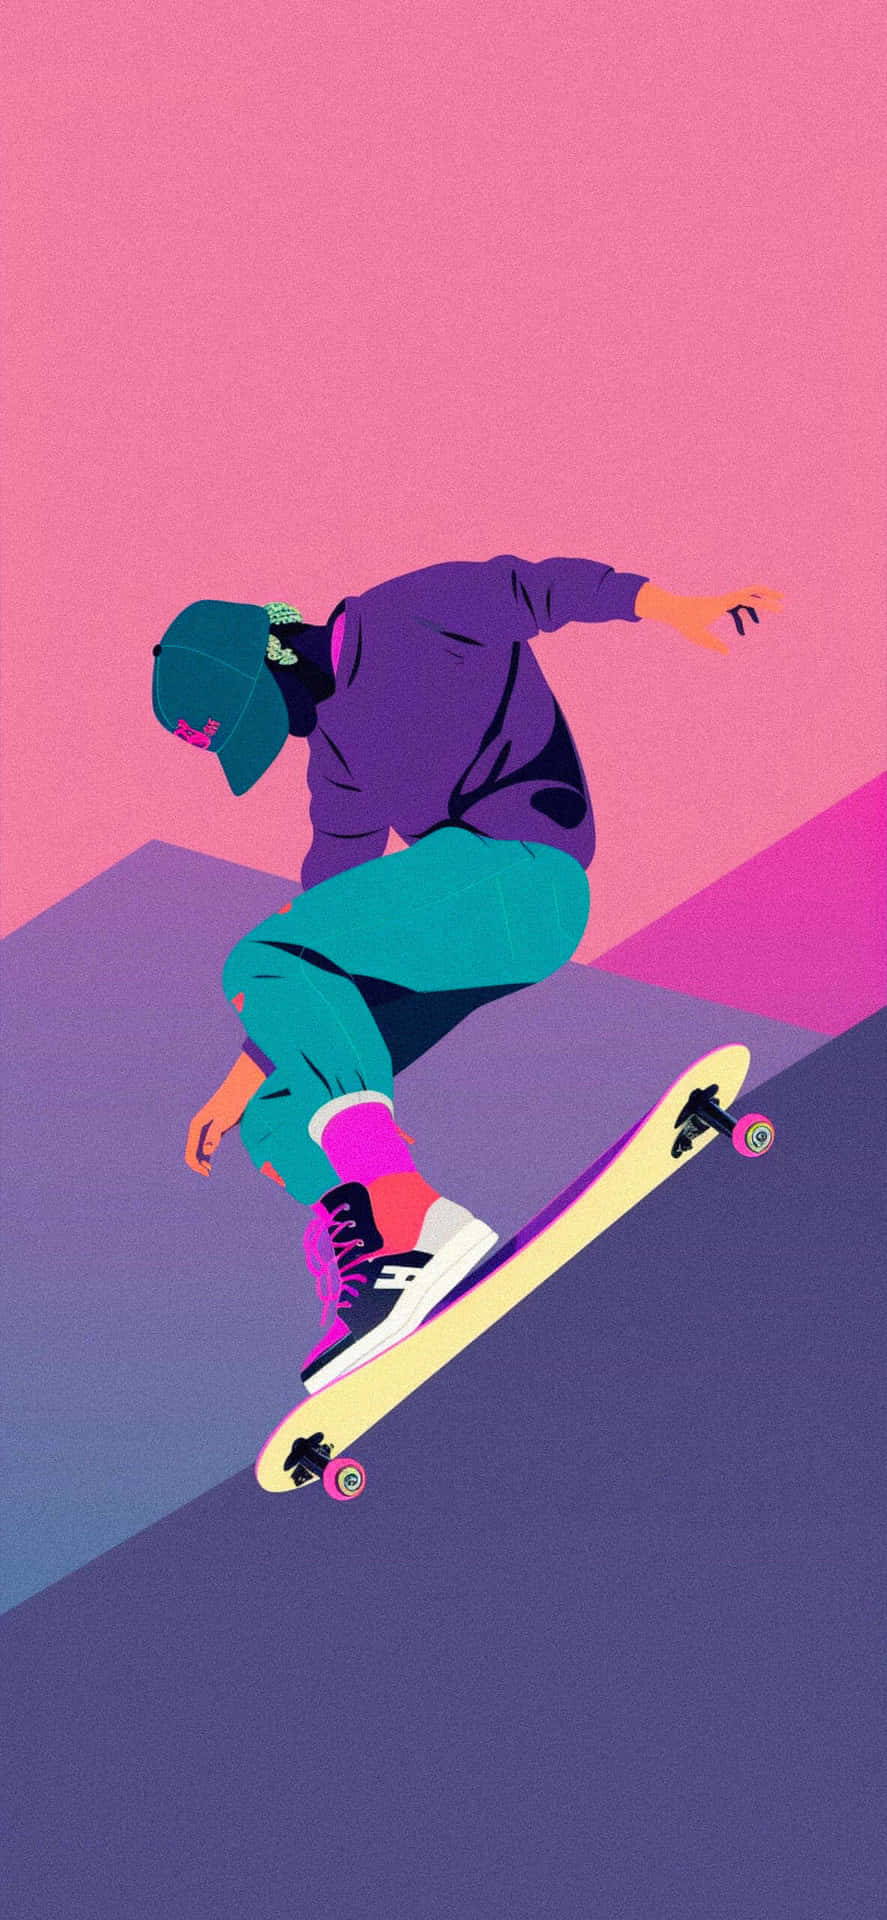 Vibrant Skateboarder Illustration Wallpaper